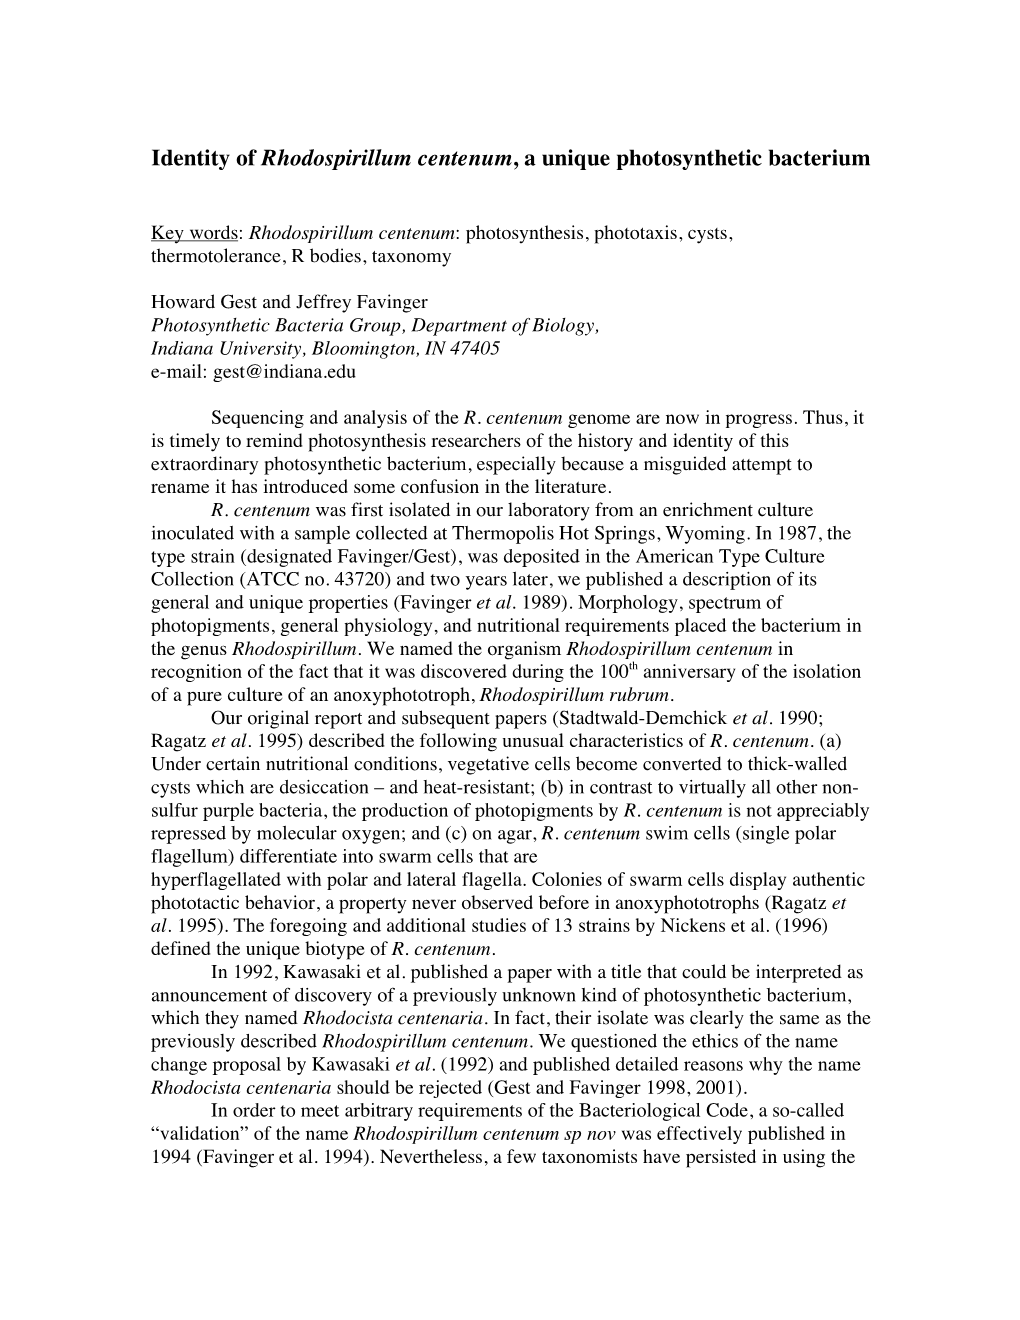 Identity of Rhodospirillum Centenum, a Unique Photosynthetic Bacterium